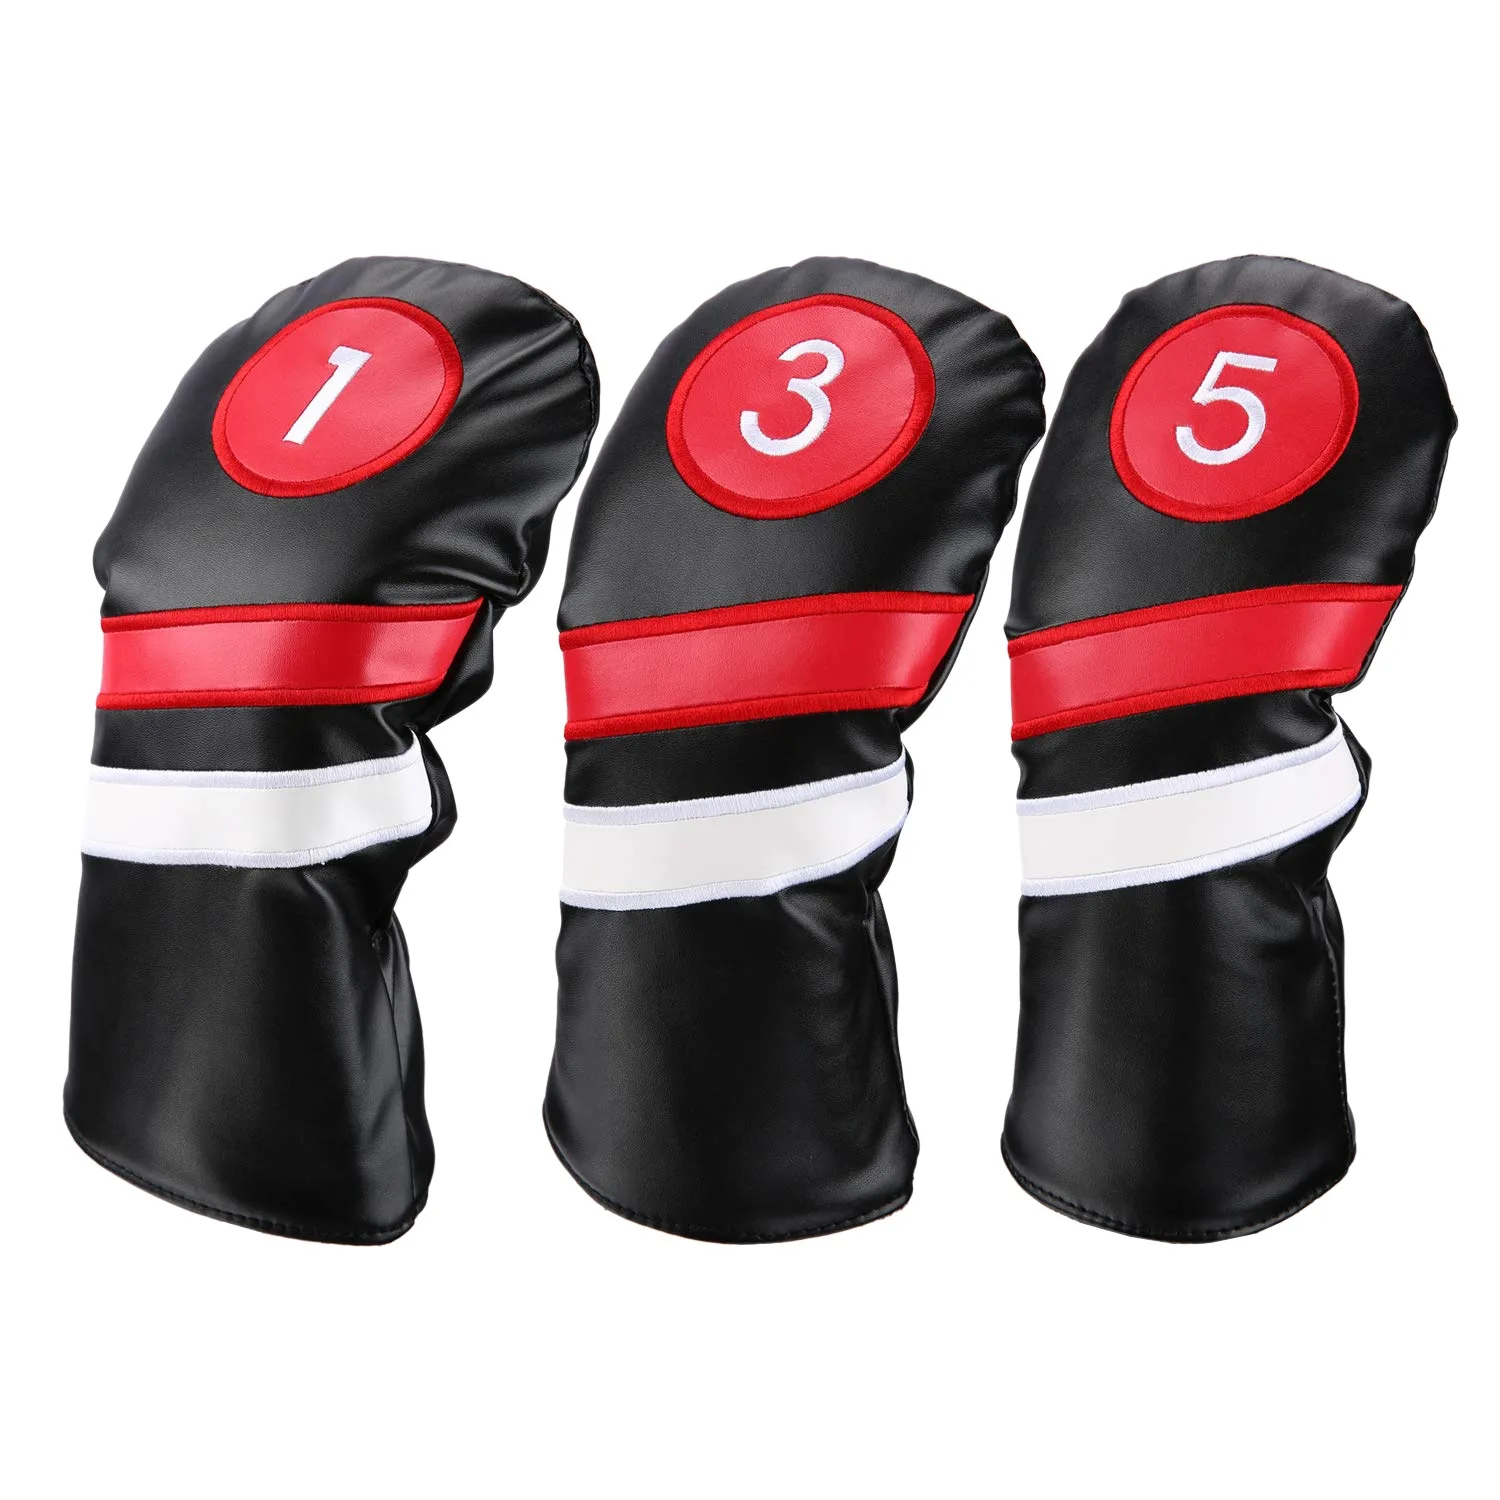 

Чехлы для головы Golf 3 шт./компл. деревянные головные уборы Fairway для водителя черные красные винтажные ПУ 1 3 5 водитель